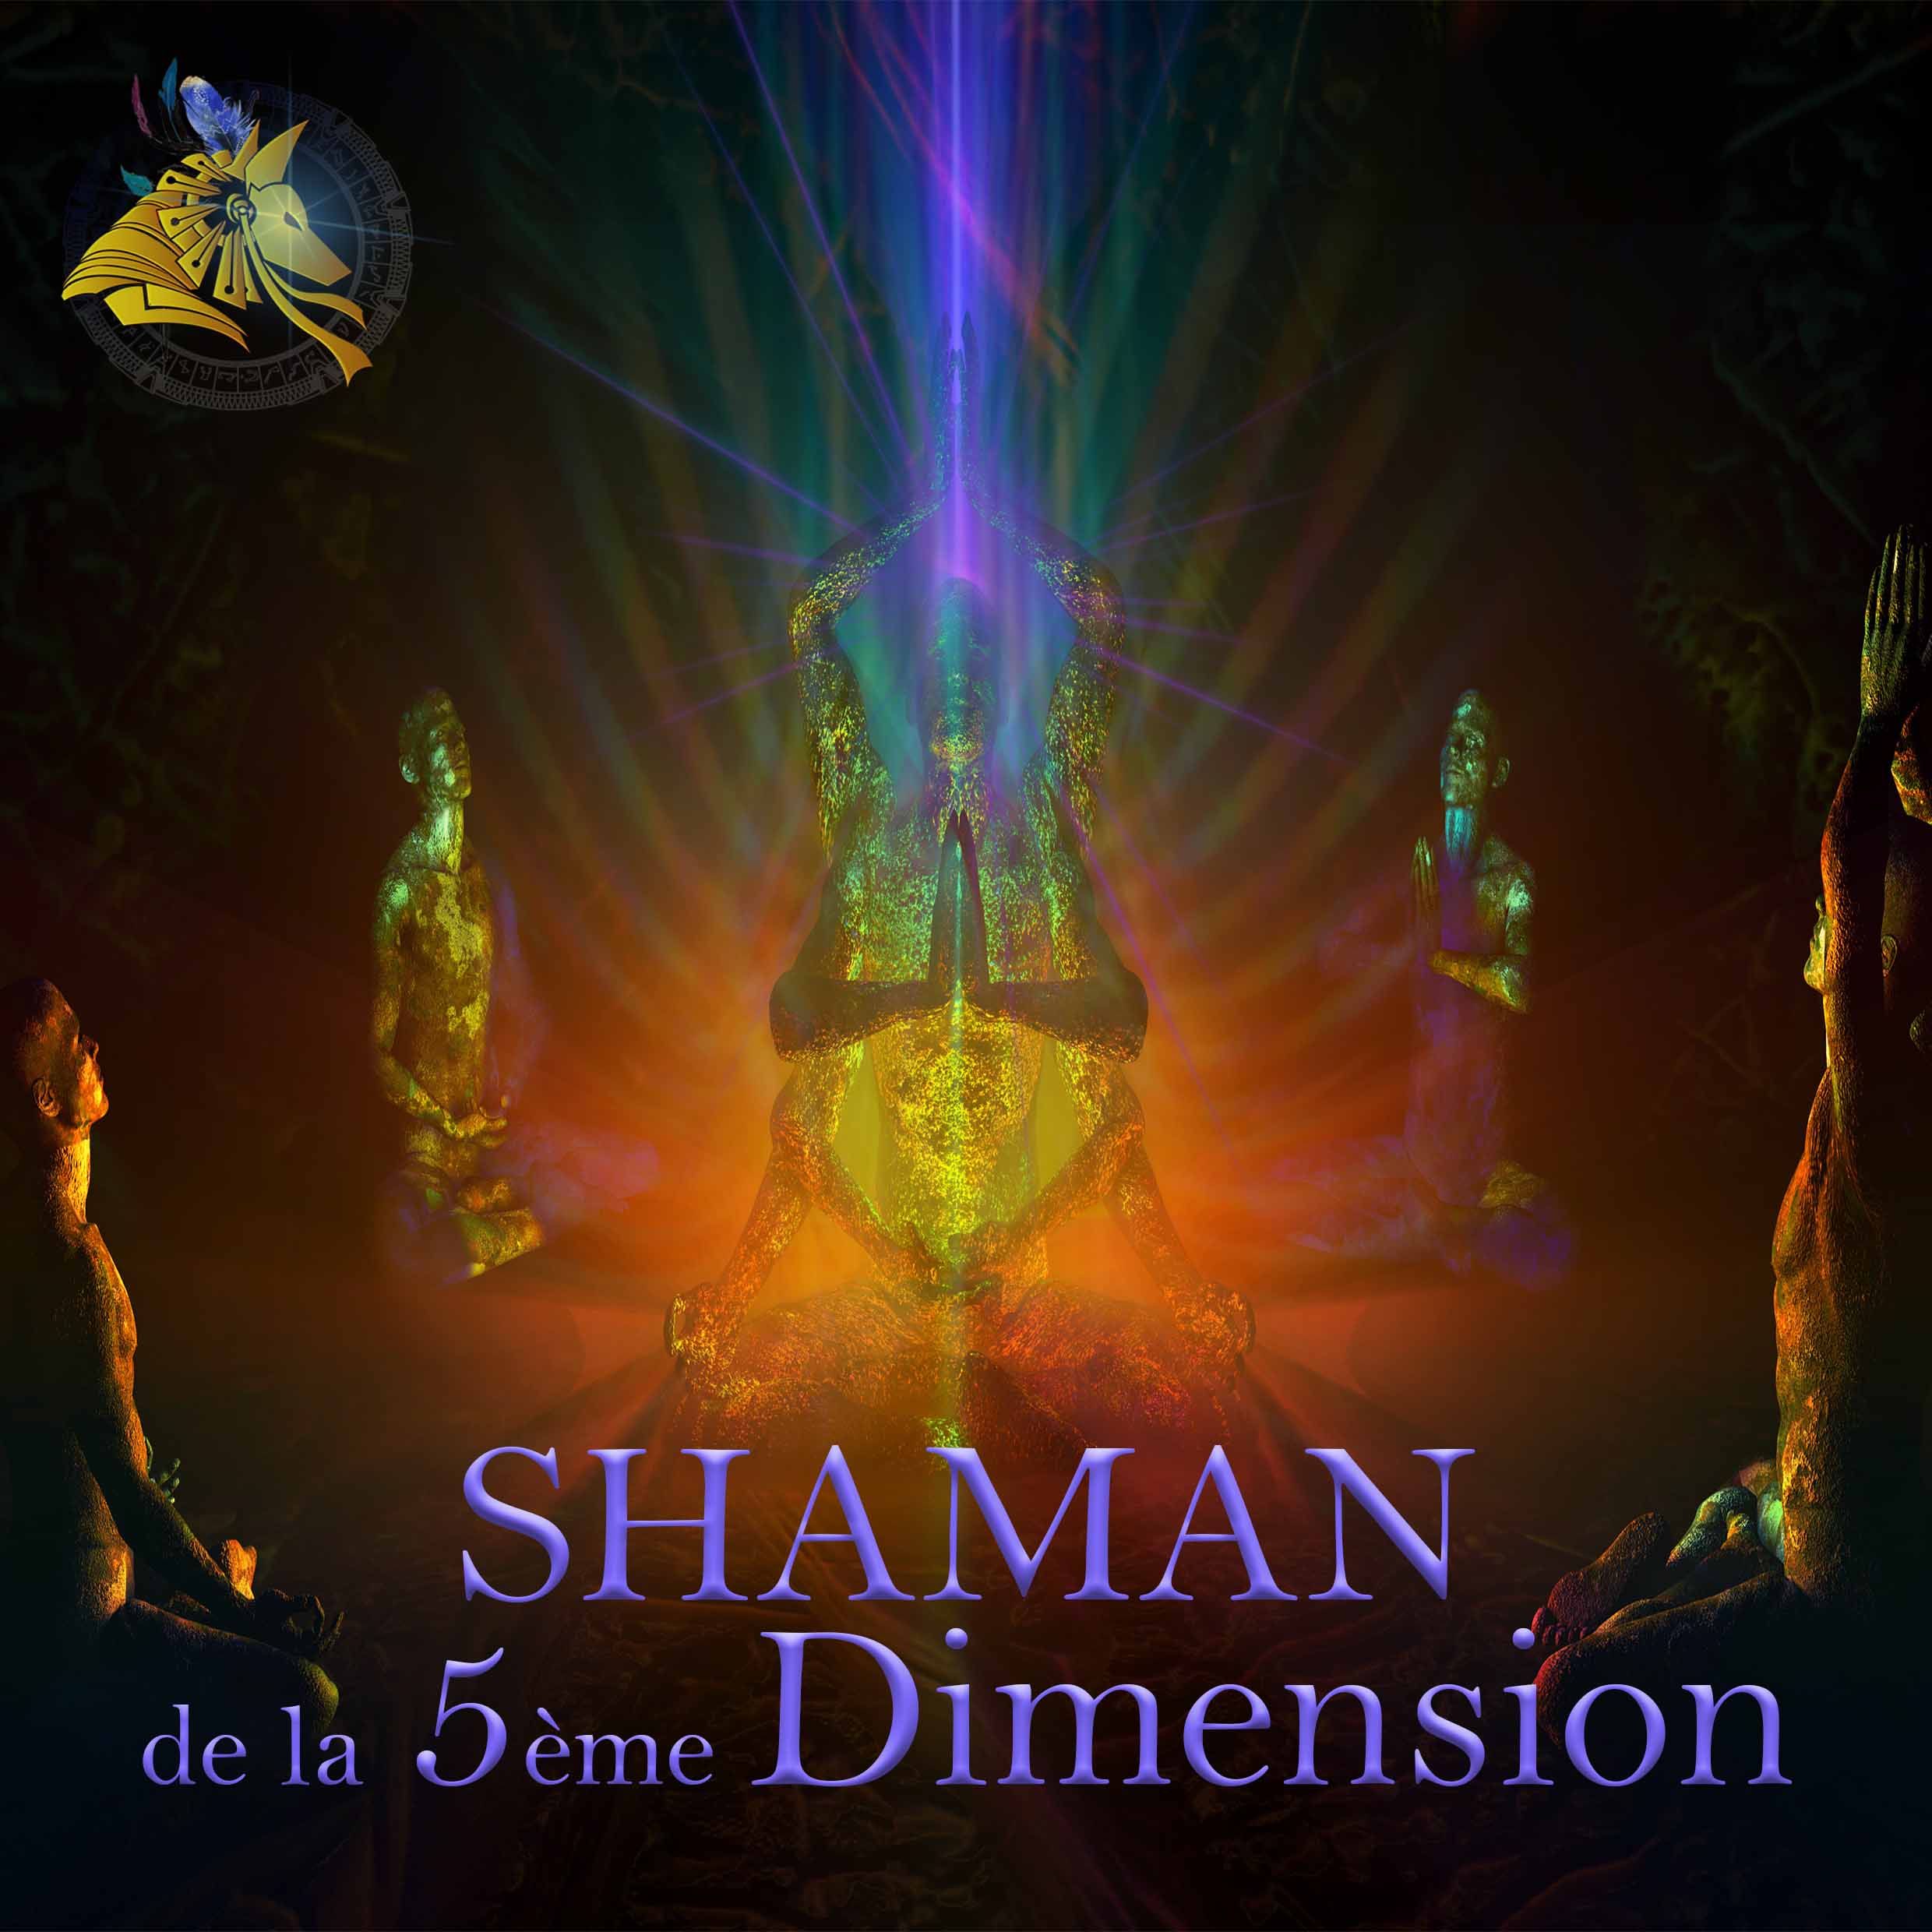 Transmission Shaman de la 5ème dimension Christophe Palette Shaman